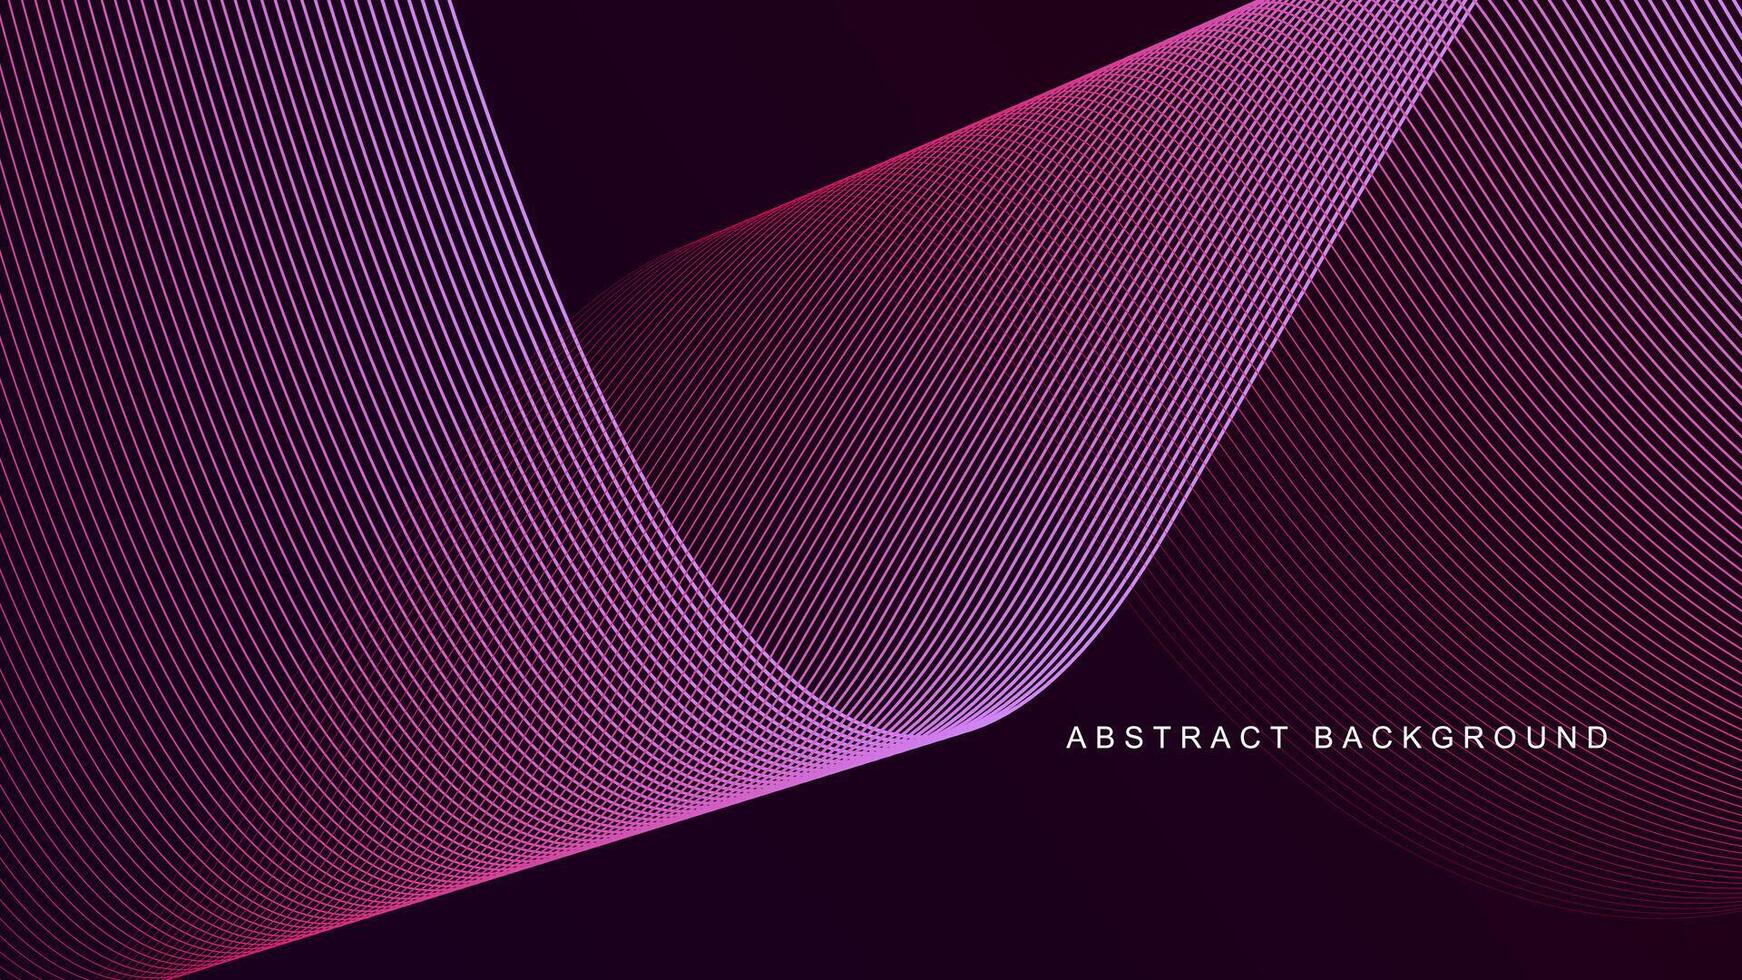 mörk rosa och lila Färg lutning bakgrund med lysande dynamisk linje vågor. trogen teknologi begrepp för baner, presentation, affisch, webb, tapet, omslag, och broschyr. vektor illustration